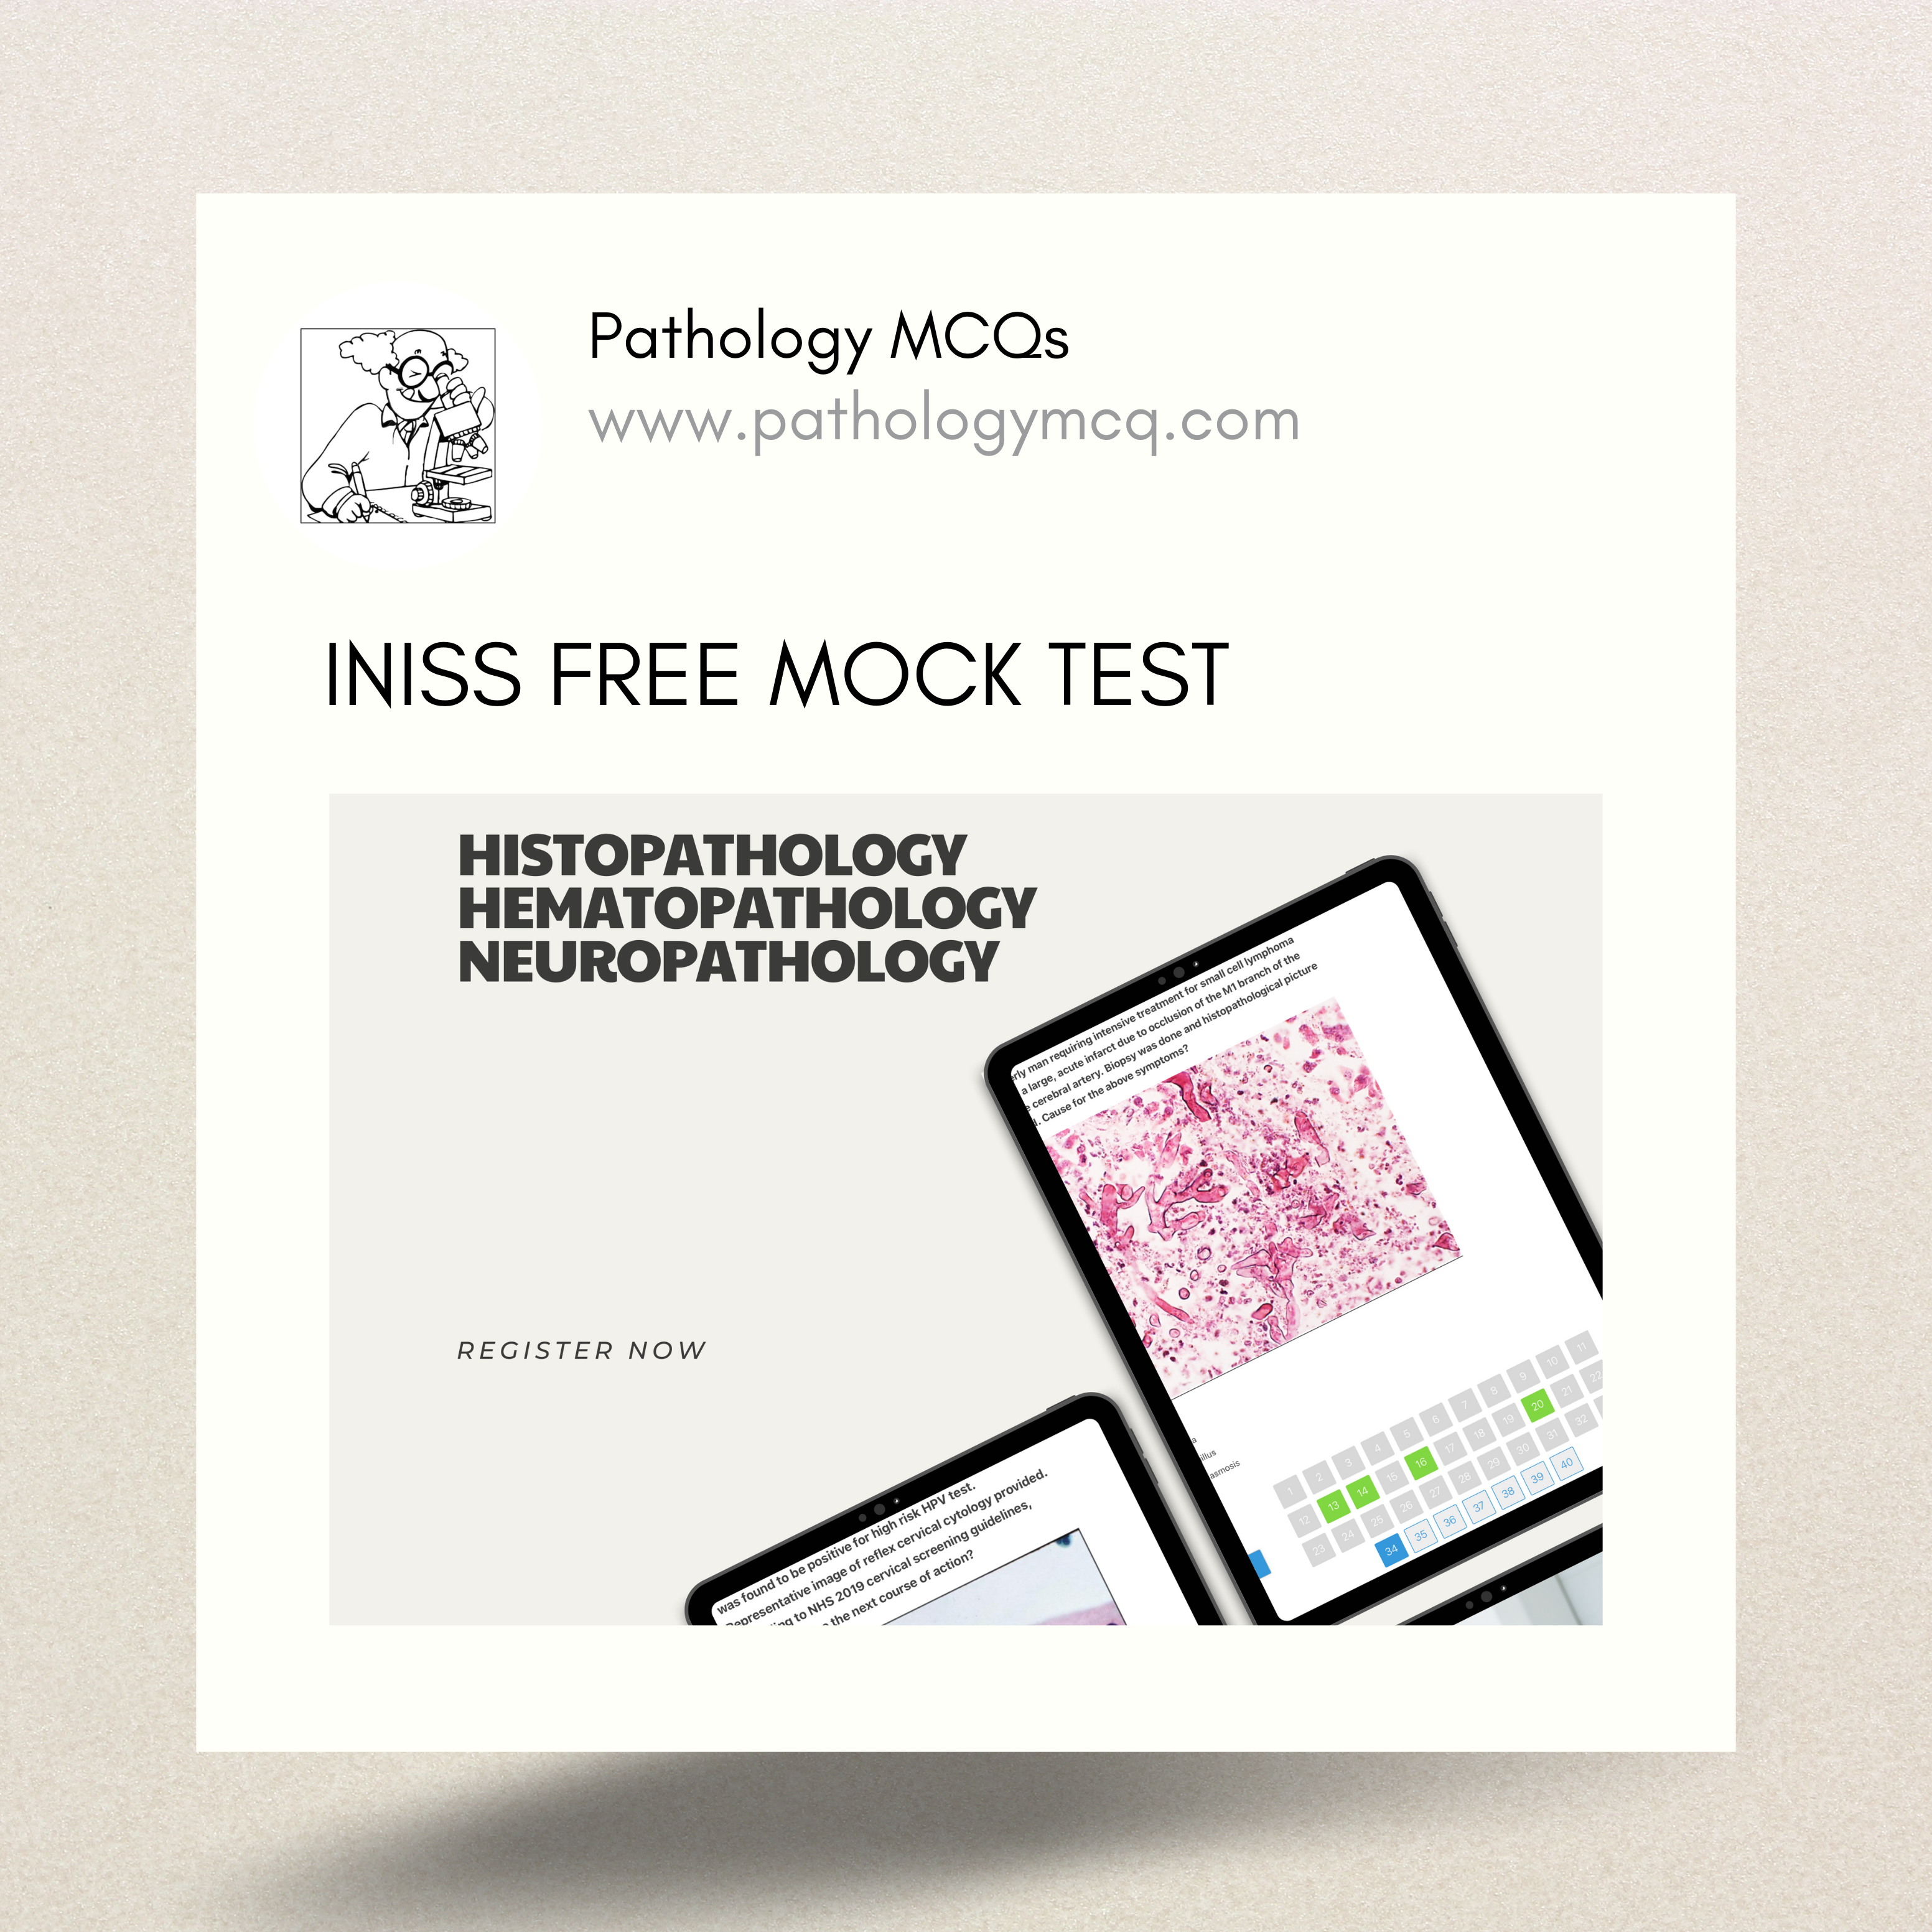 INI-SS FREE histopathology/ hematopathology/ neuropathology mock test for all